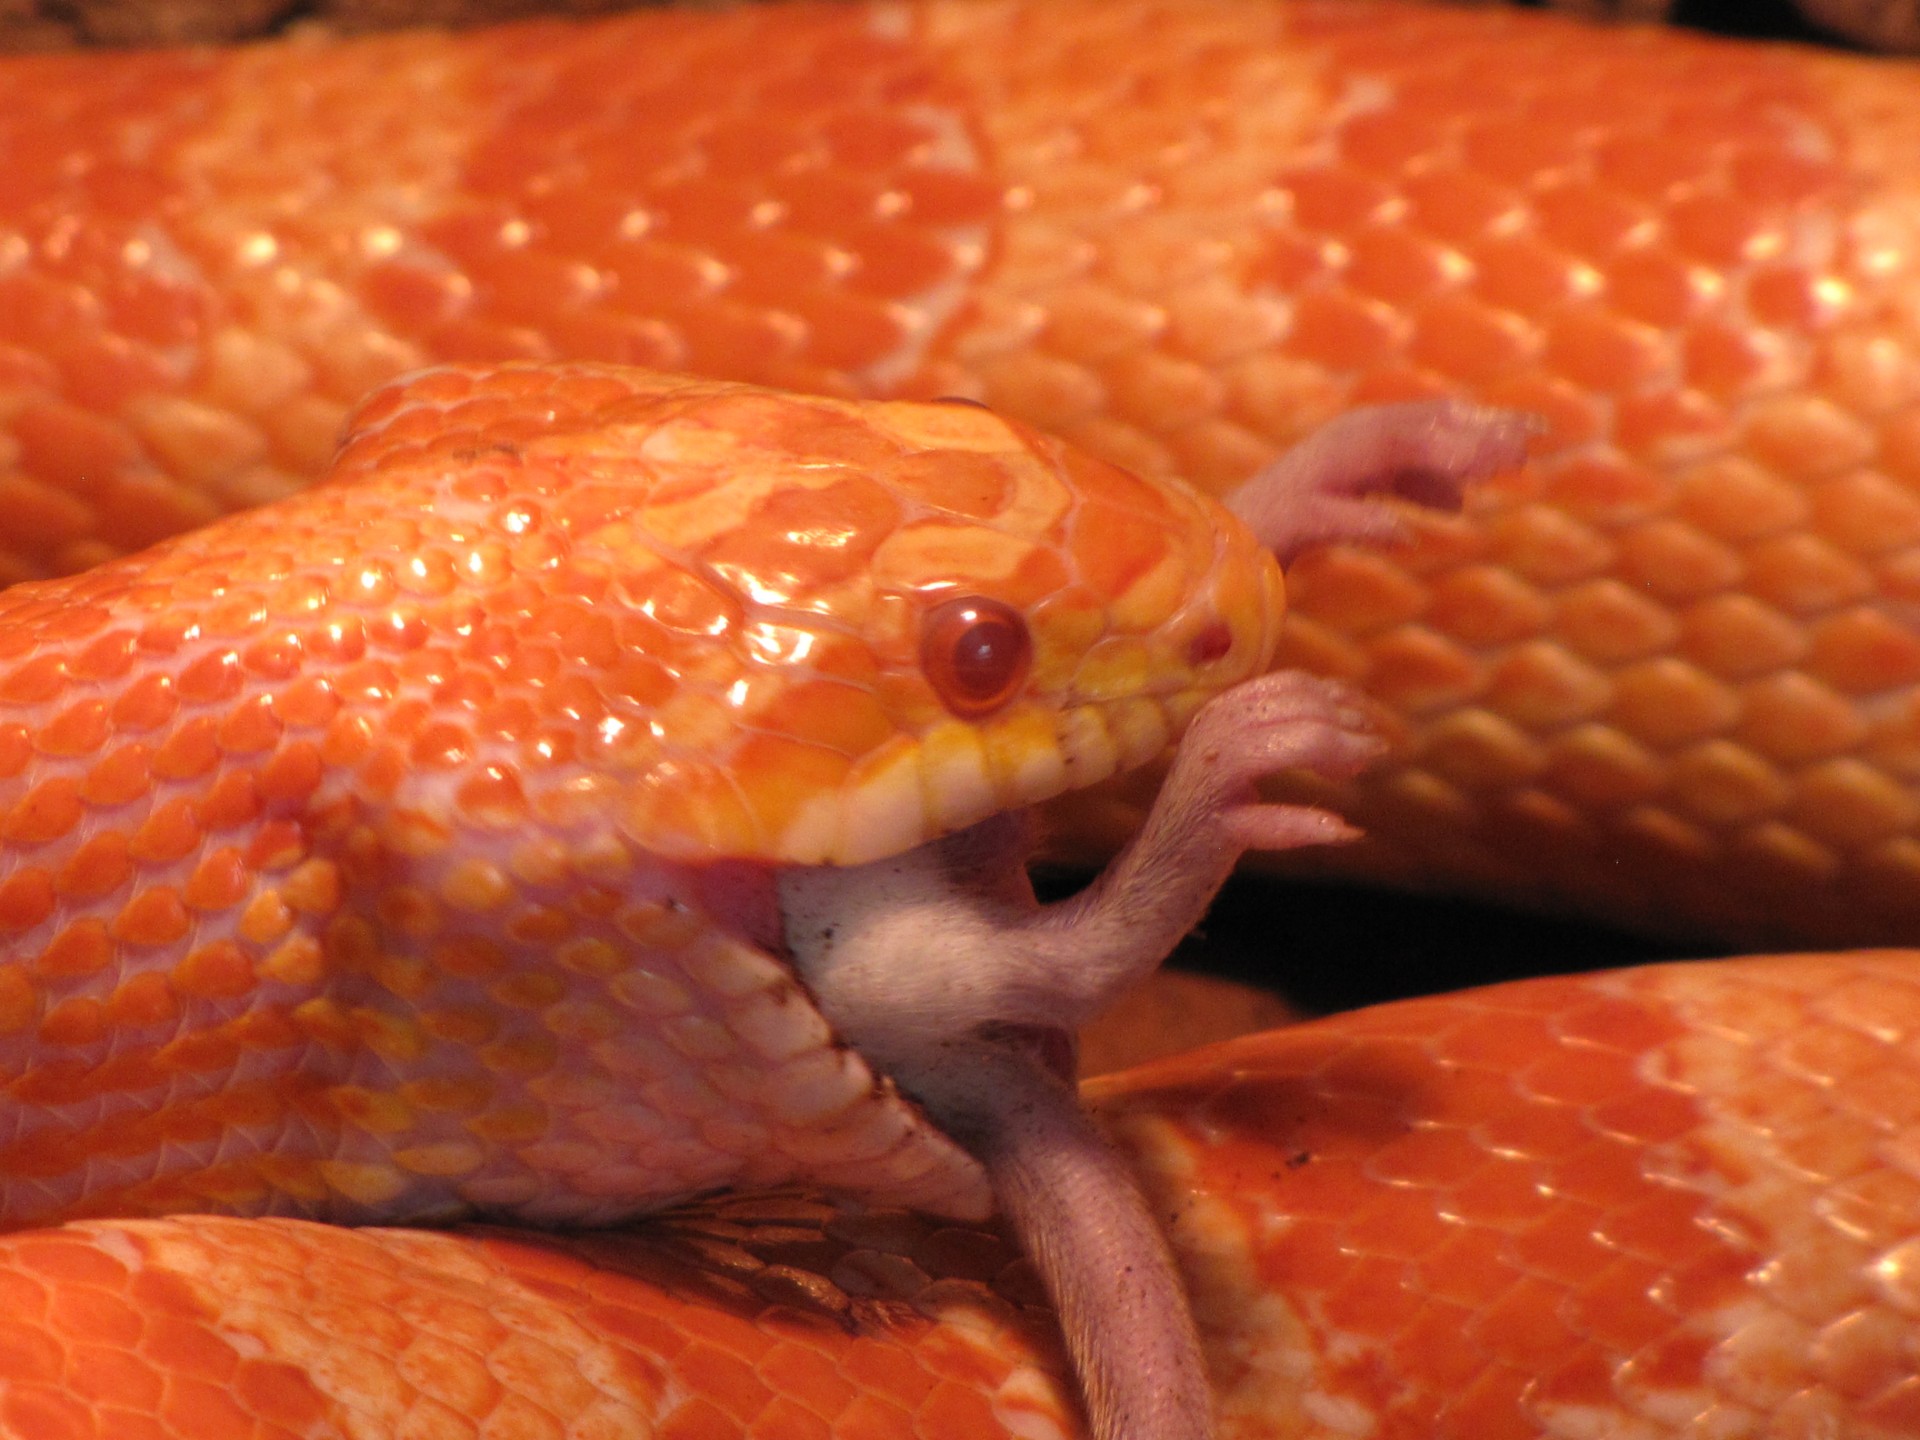 snake eating a mouse. America corn snake